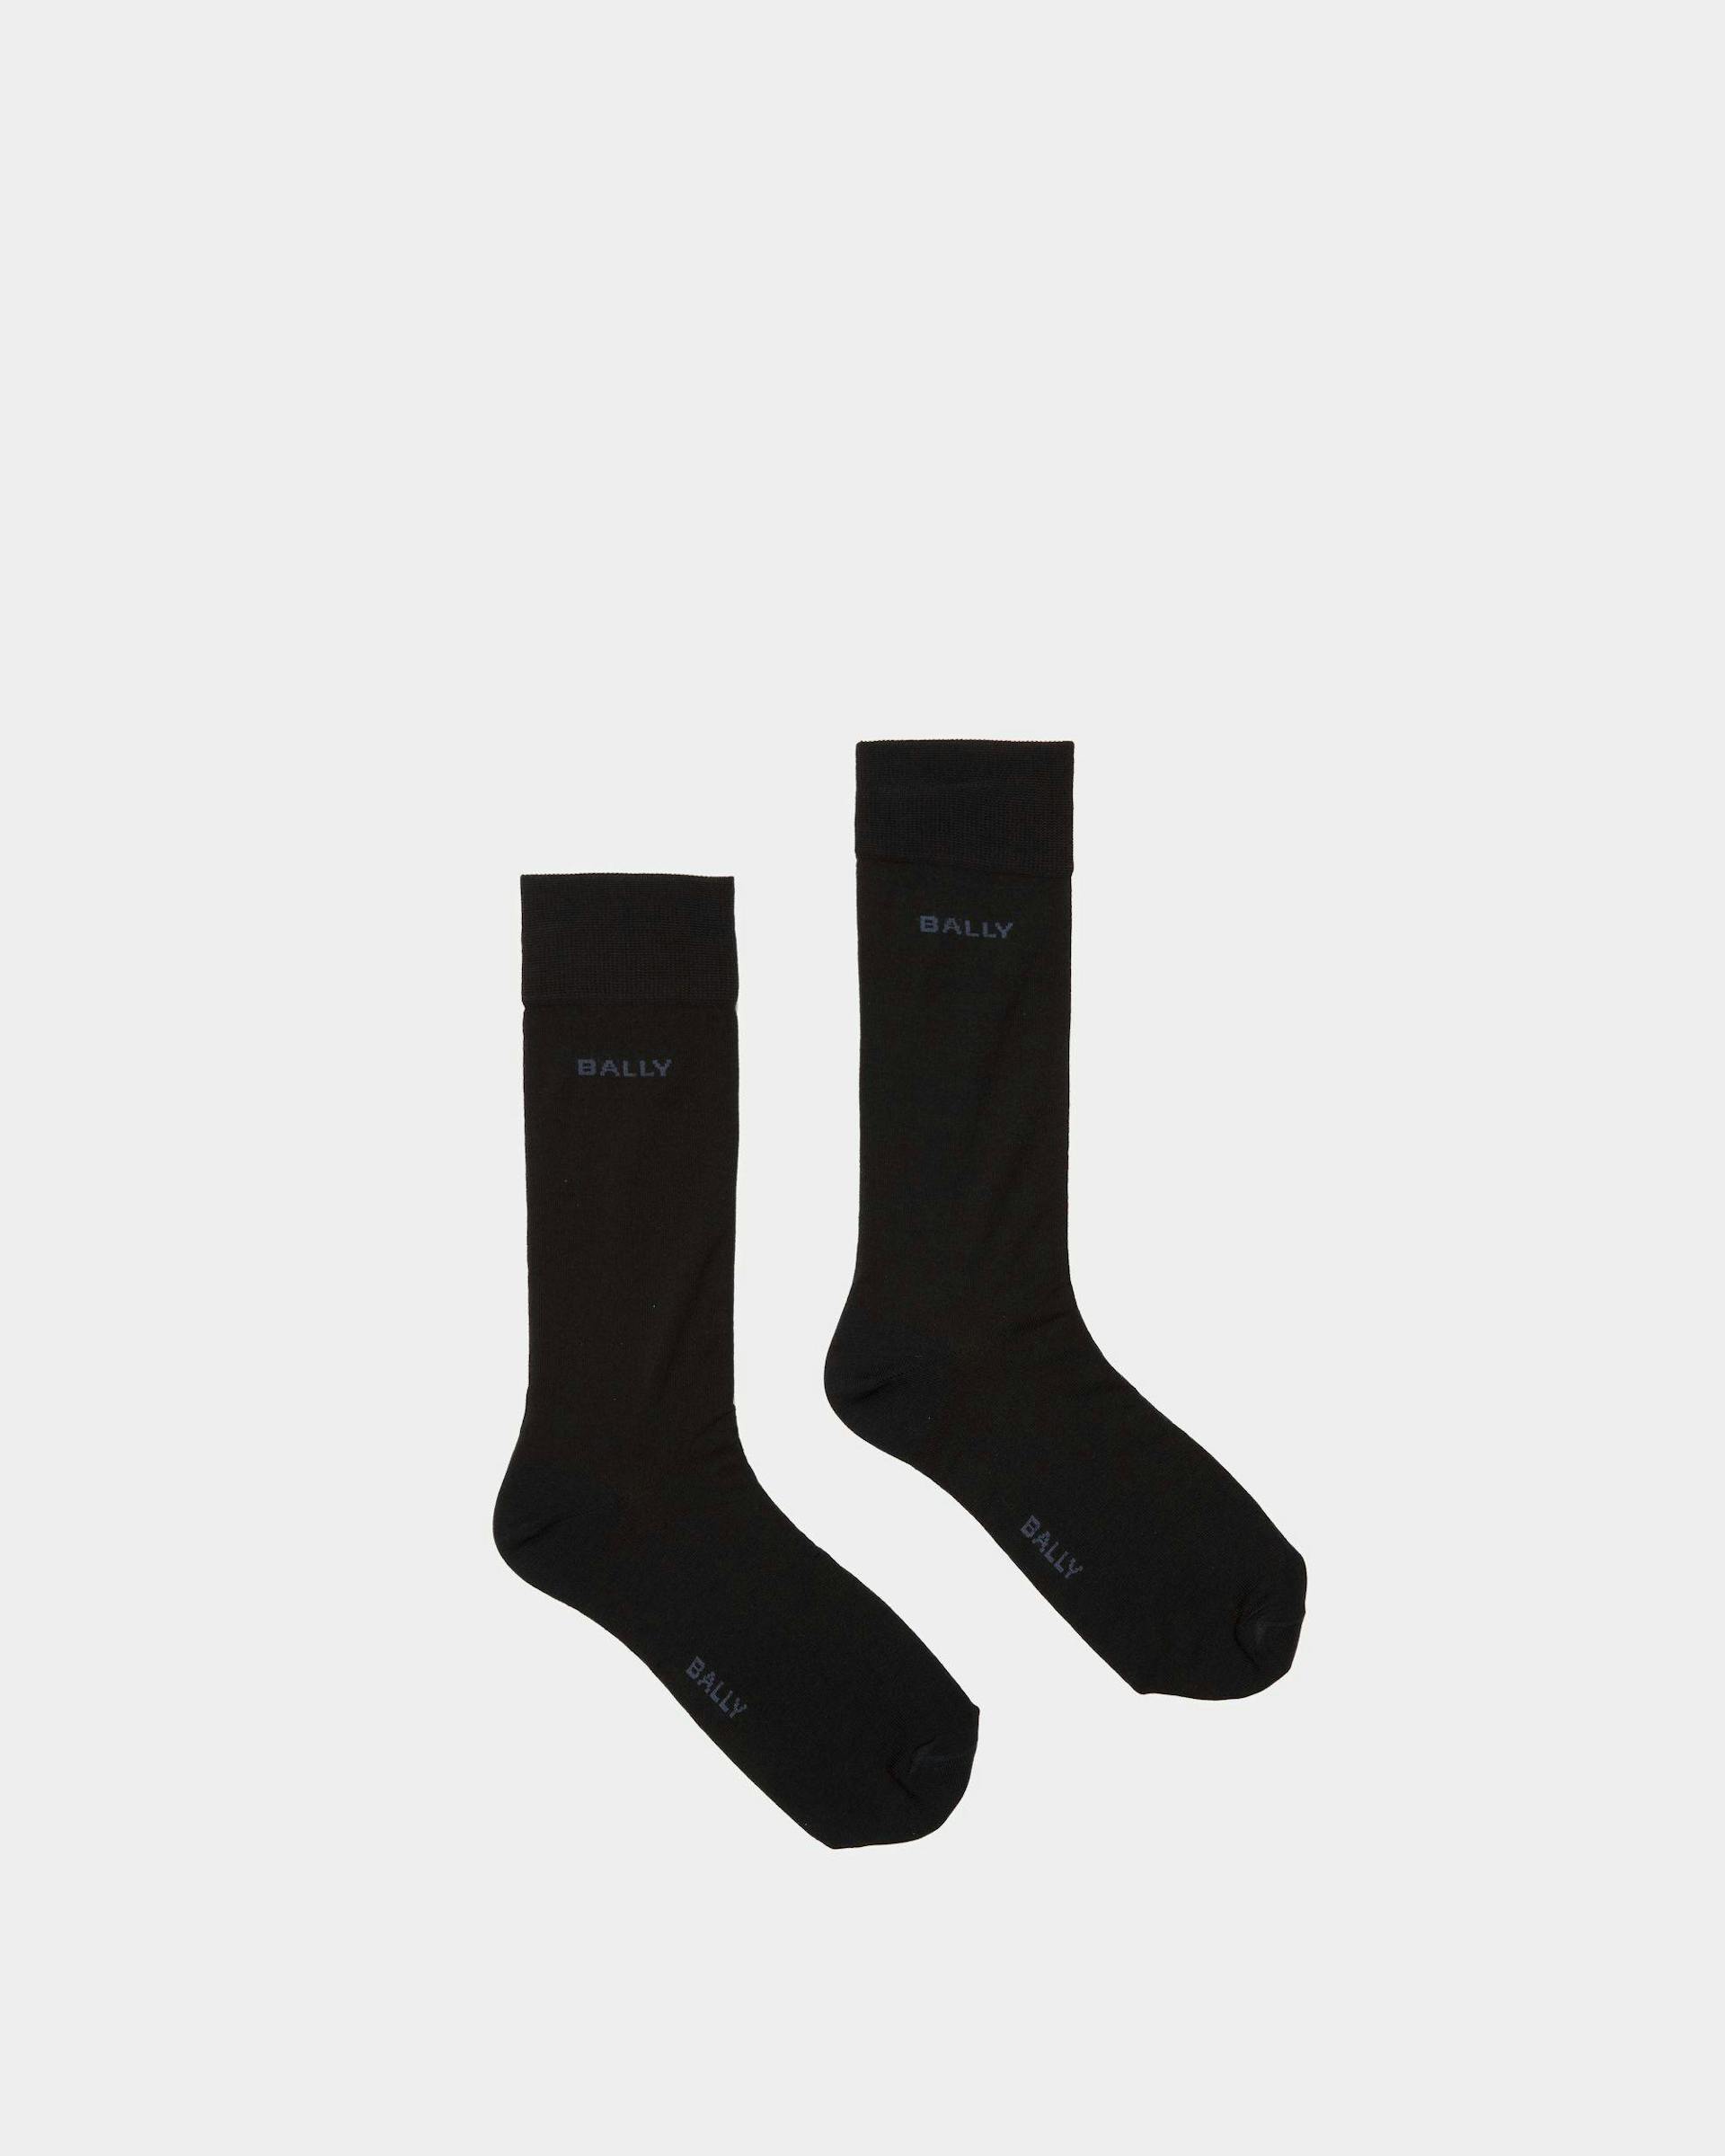 Chaussettes avec logo Coton chiné couleur encre et indigo - Homme - Bally - 01